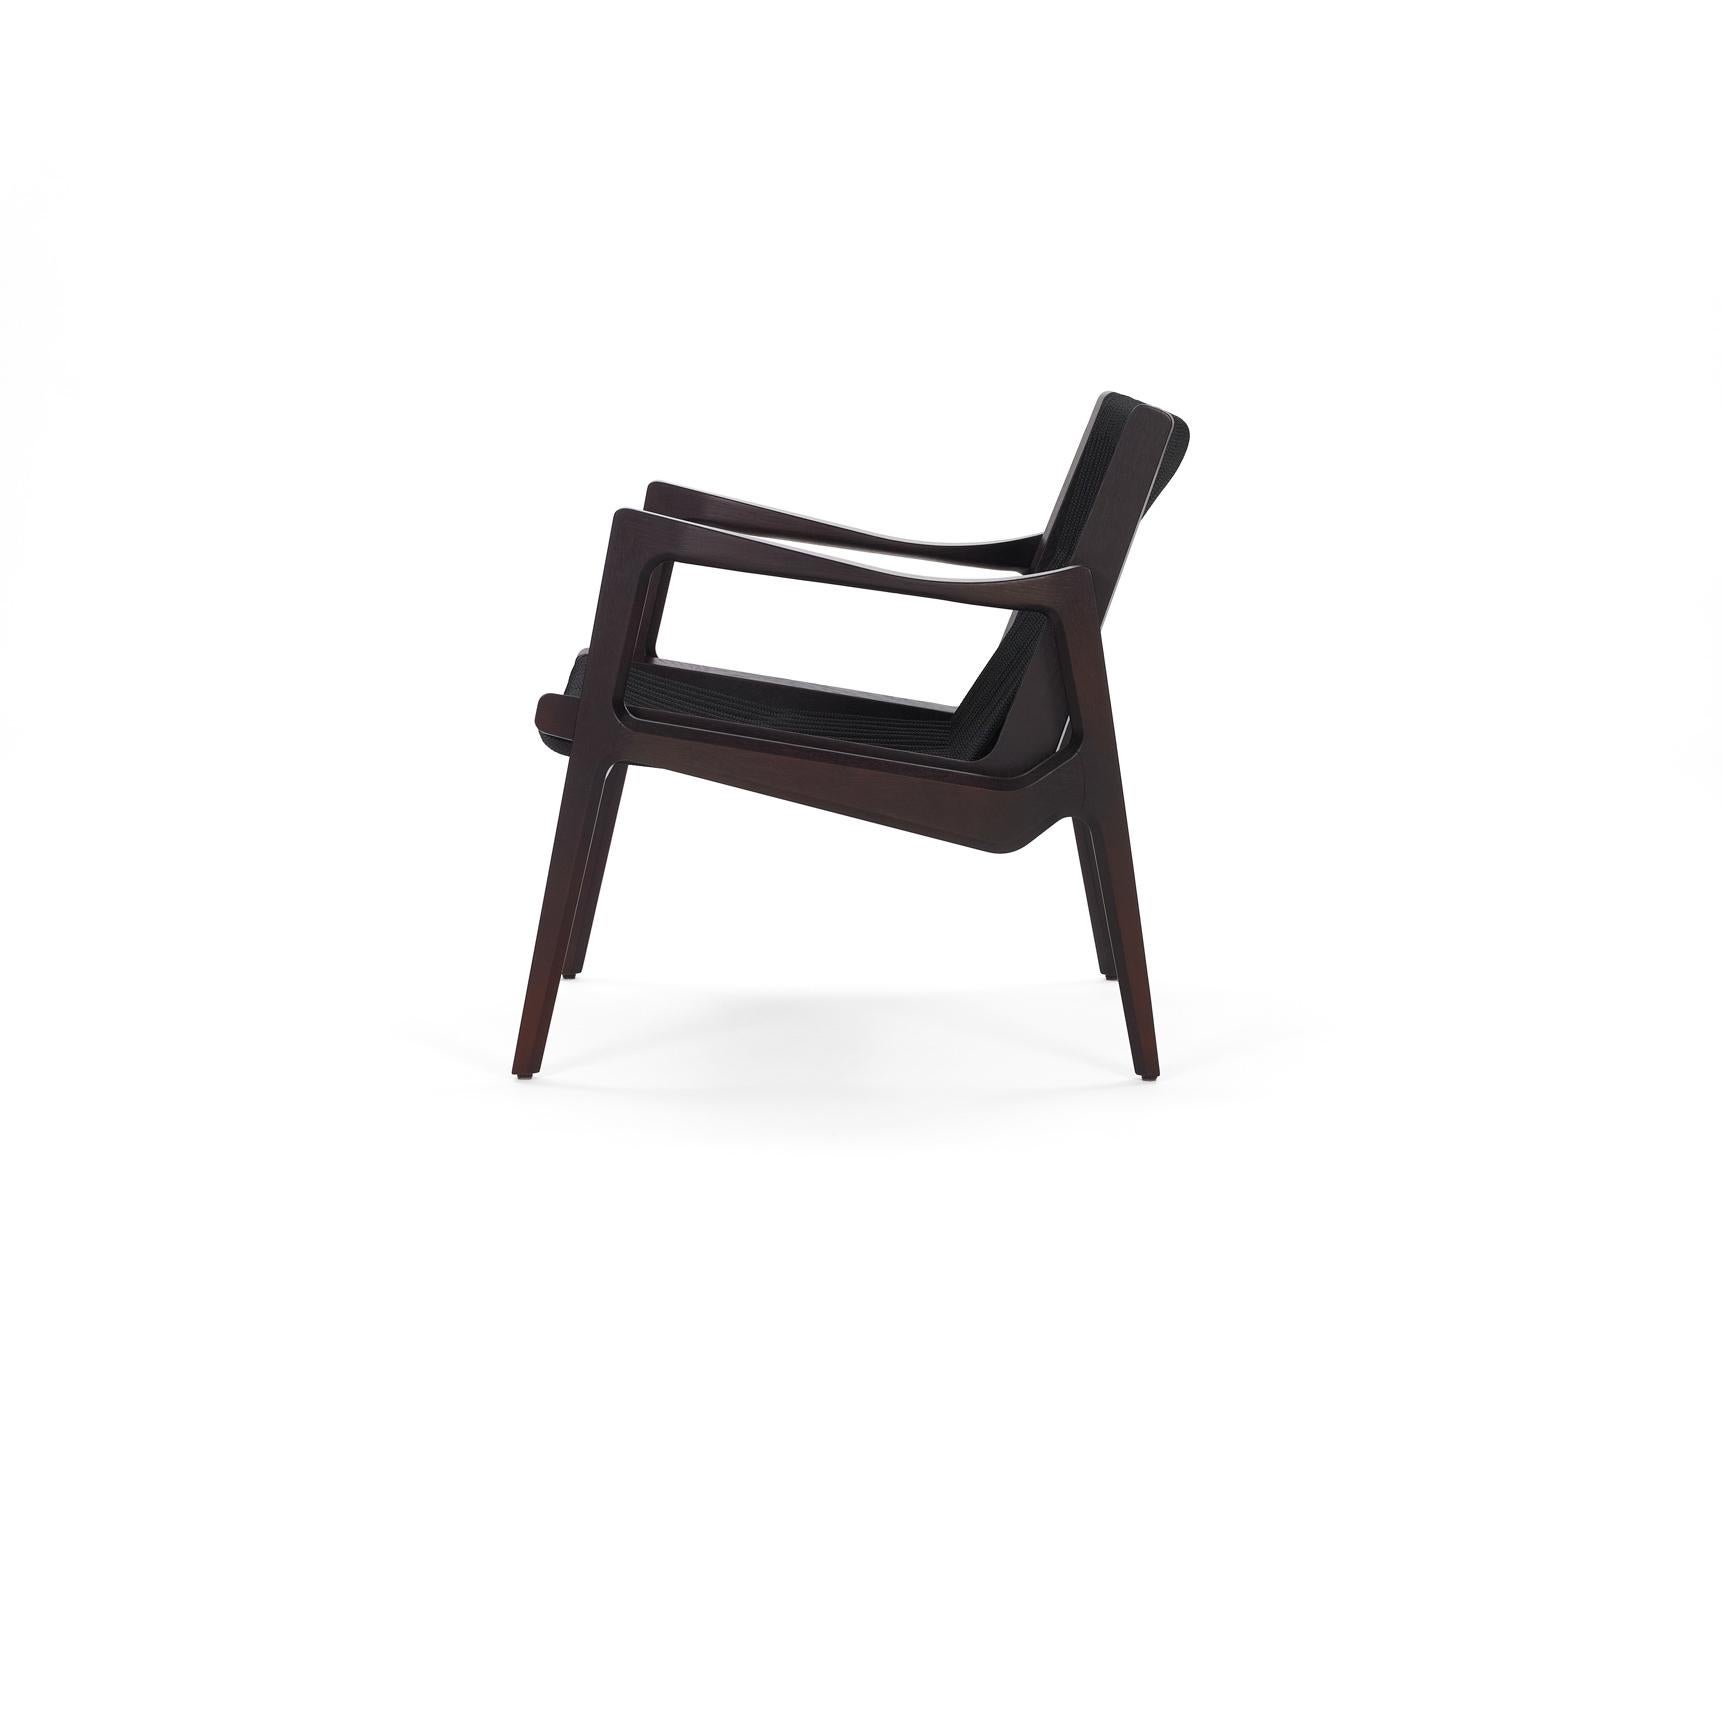 Avec la chaise longue Euvira, Jader Almeida perpétue la tradition des grands maîtres brésiliens du design des années 1960 et 1970 avec une facilité déconcertante ; en même temps, il trouve sa propre expression individuelle et contemporaine d'une